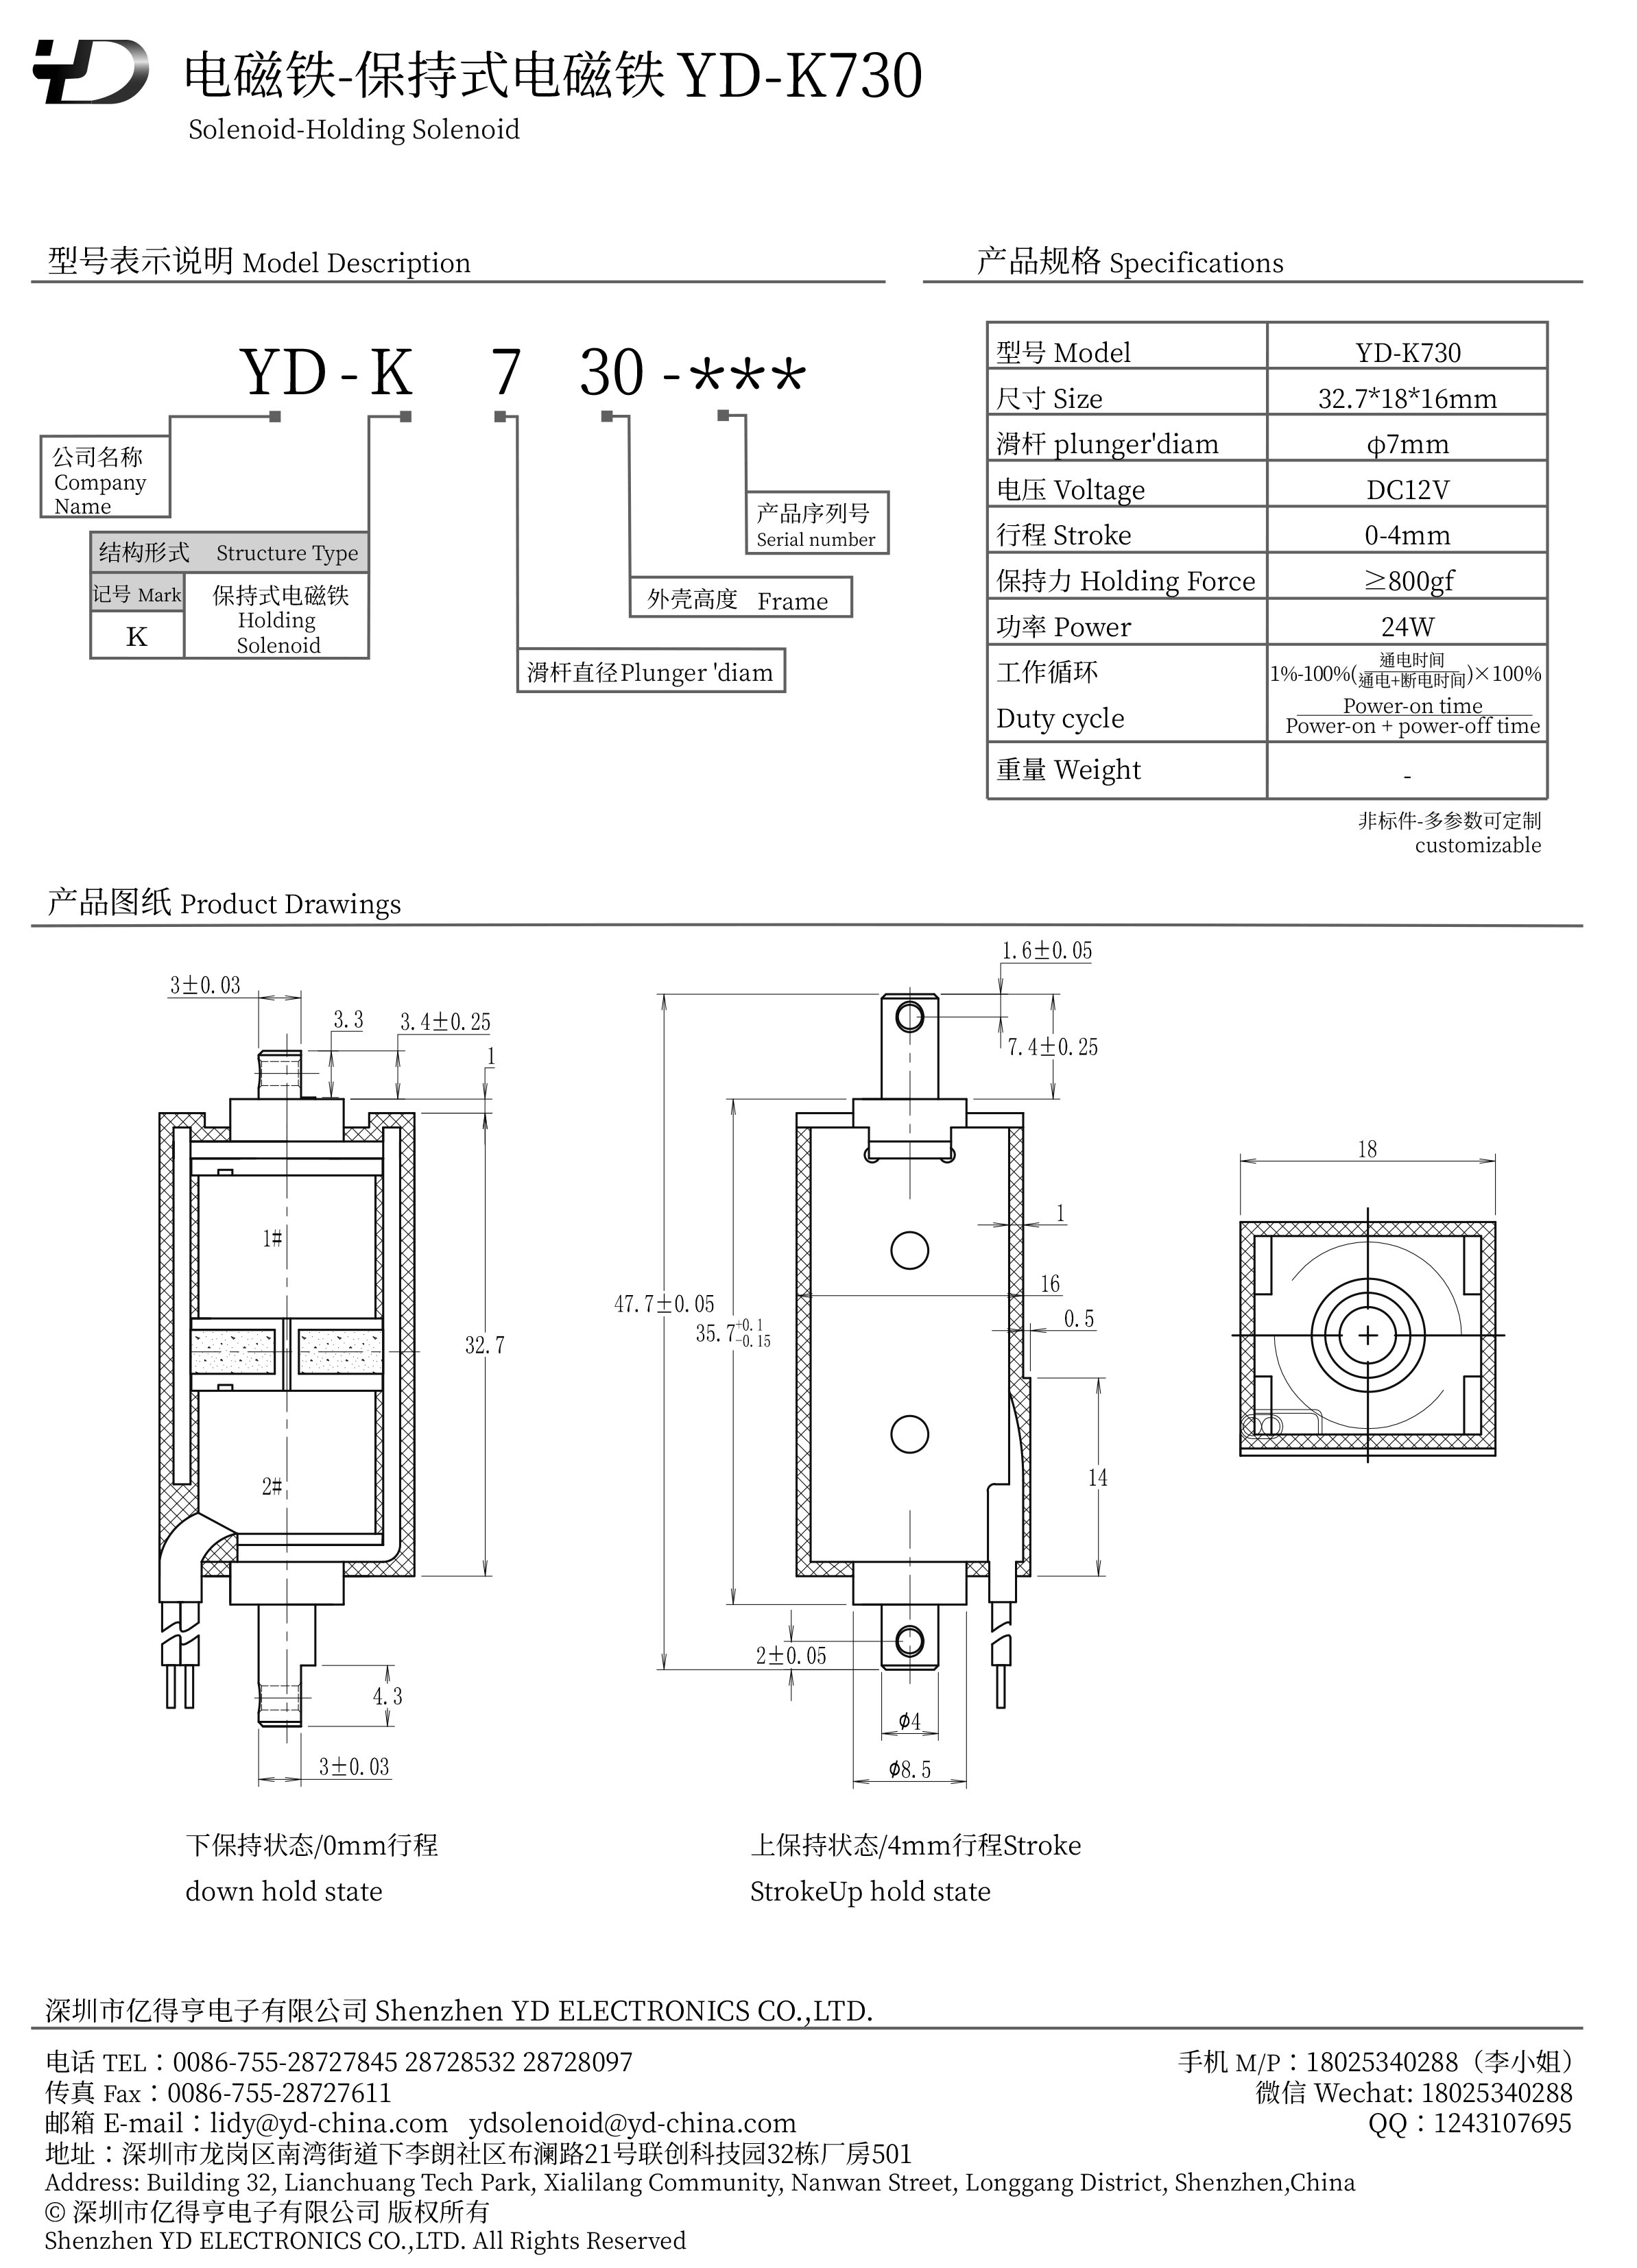 YD-K730-2-PDF.jpg